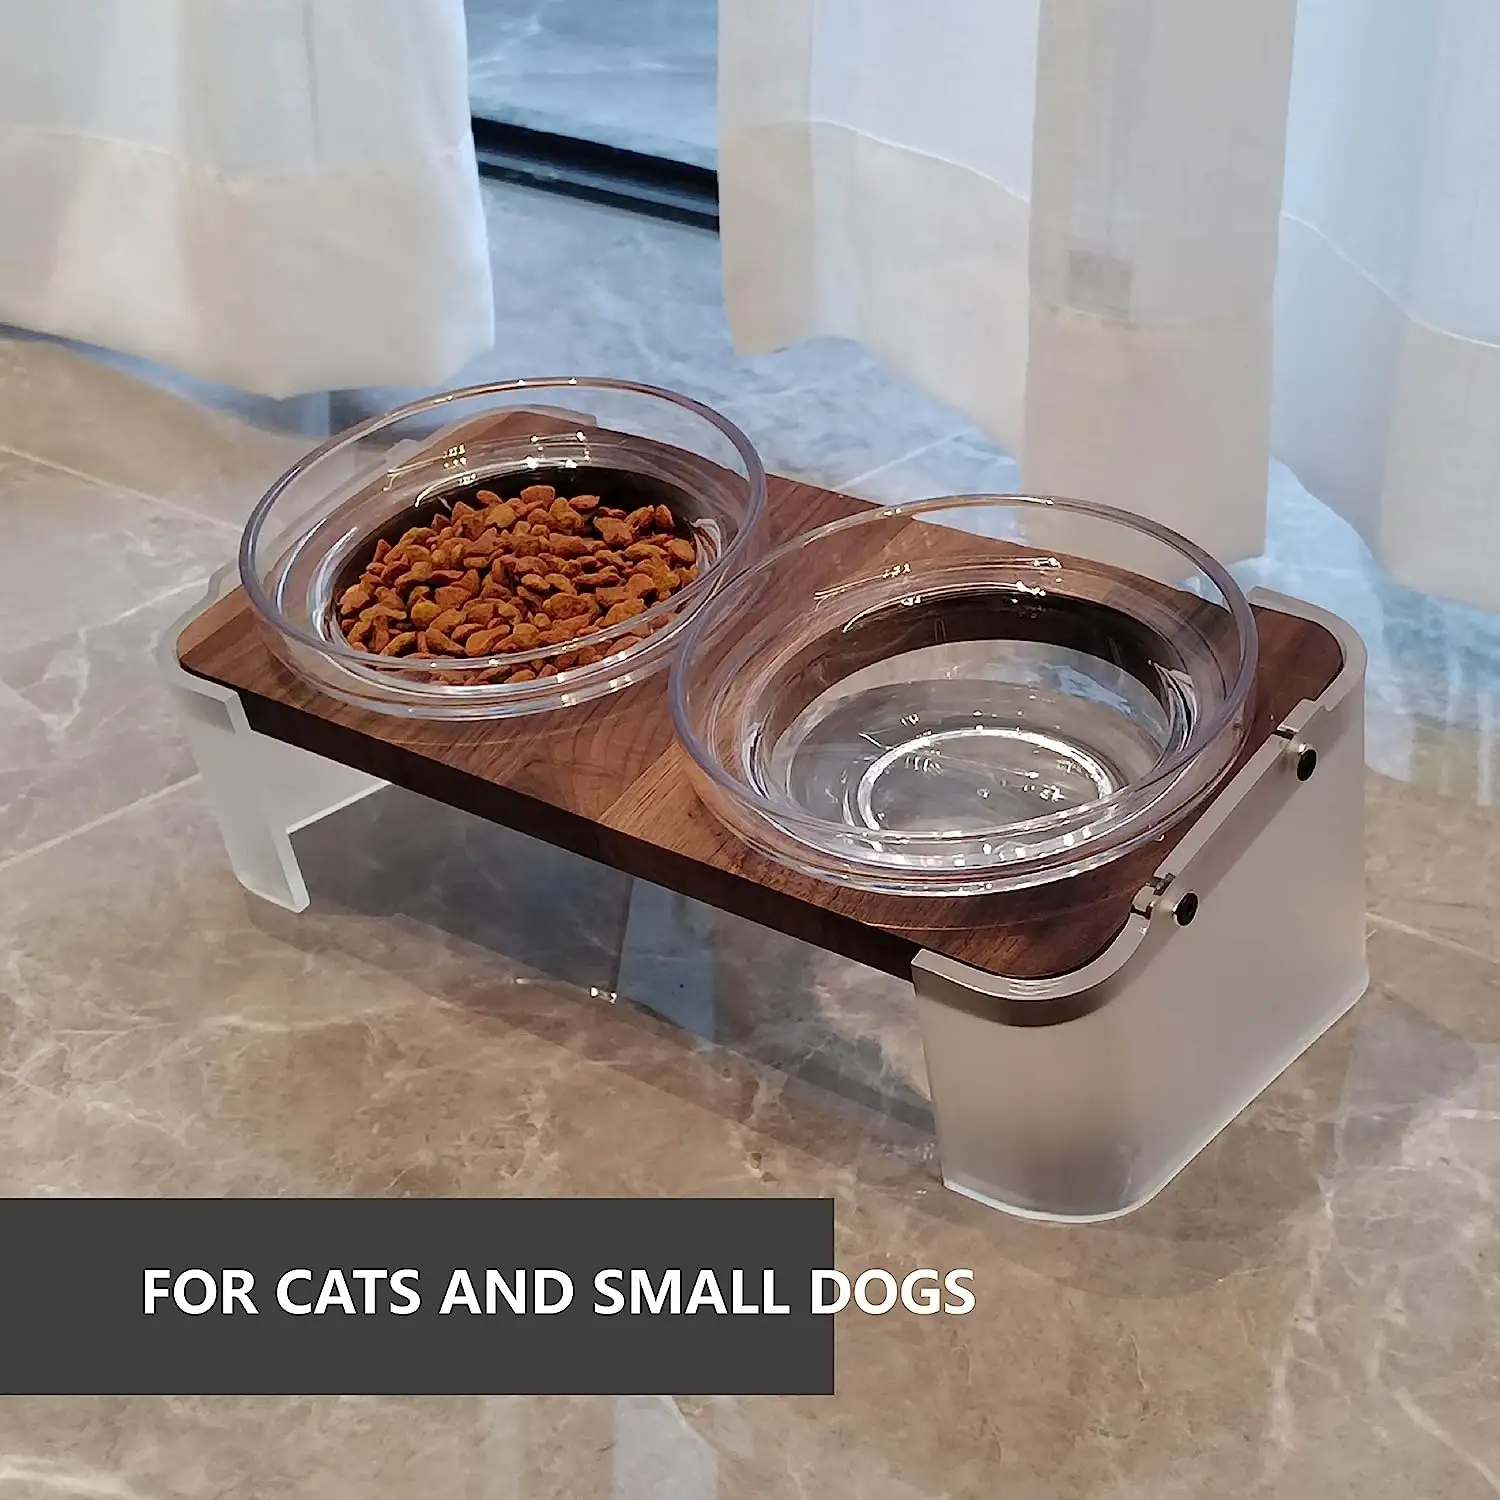 ชามอาหารสุนัขและแมวทำจากอะคริลิคทรงสูงพร้อมชามสเตนเลสและแก้วแบบถอดได้2ชุด